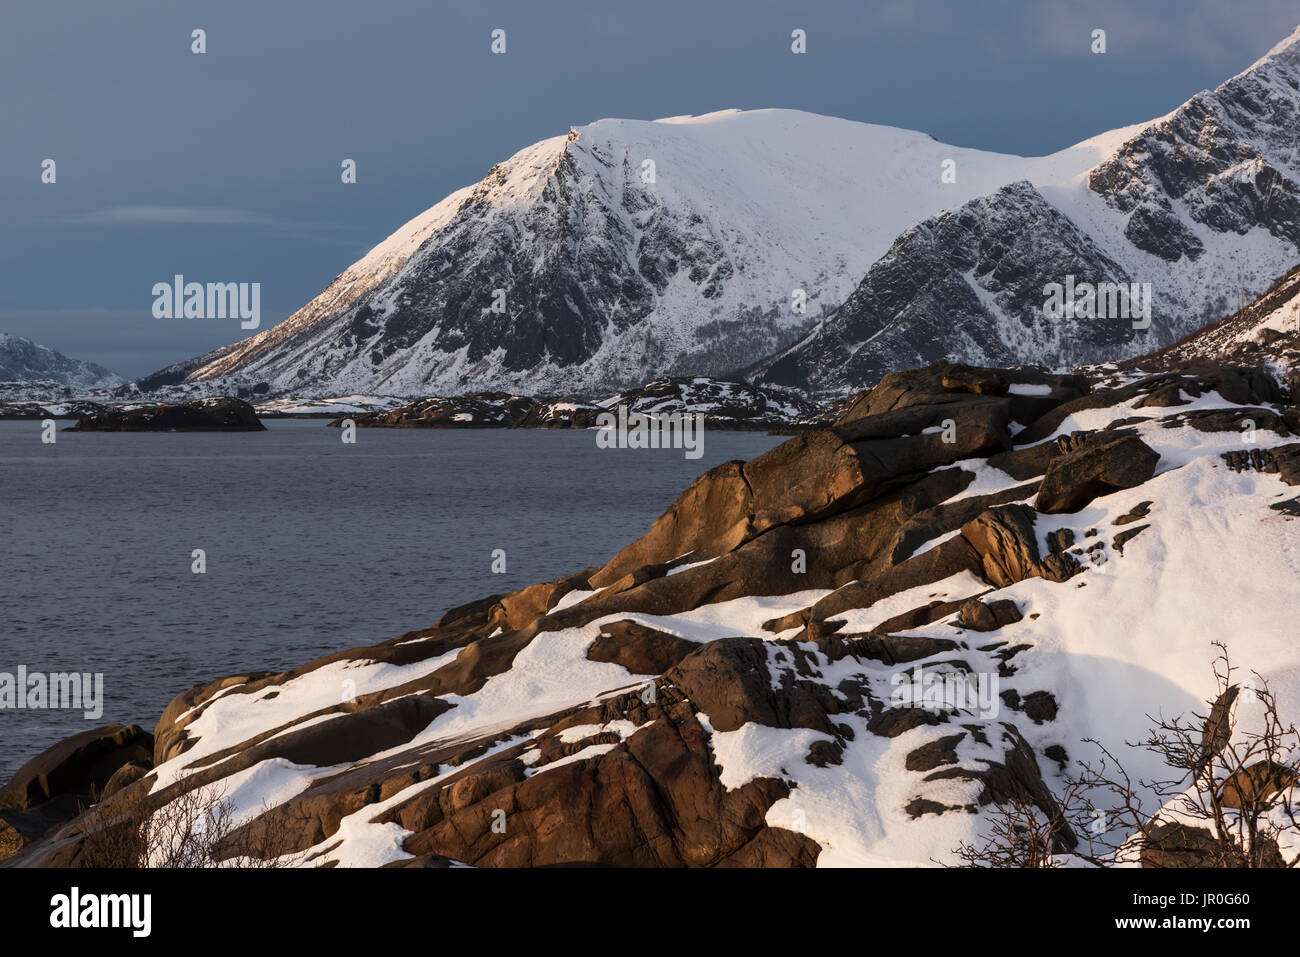 Robusto e montagne coperte di neve lungo le coste di un'isola; Isole Lofoten, Nordland, Norvegia Foto Stock